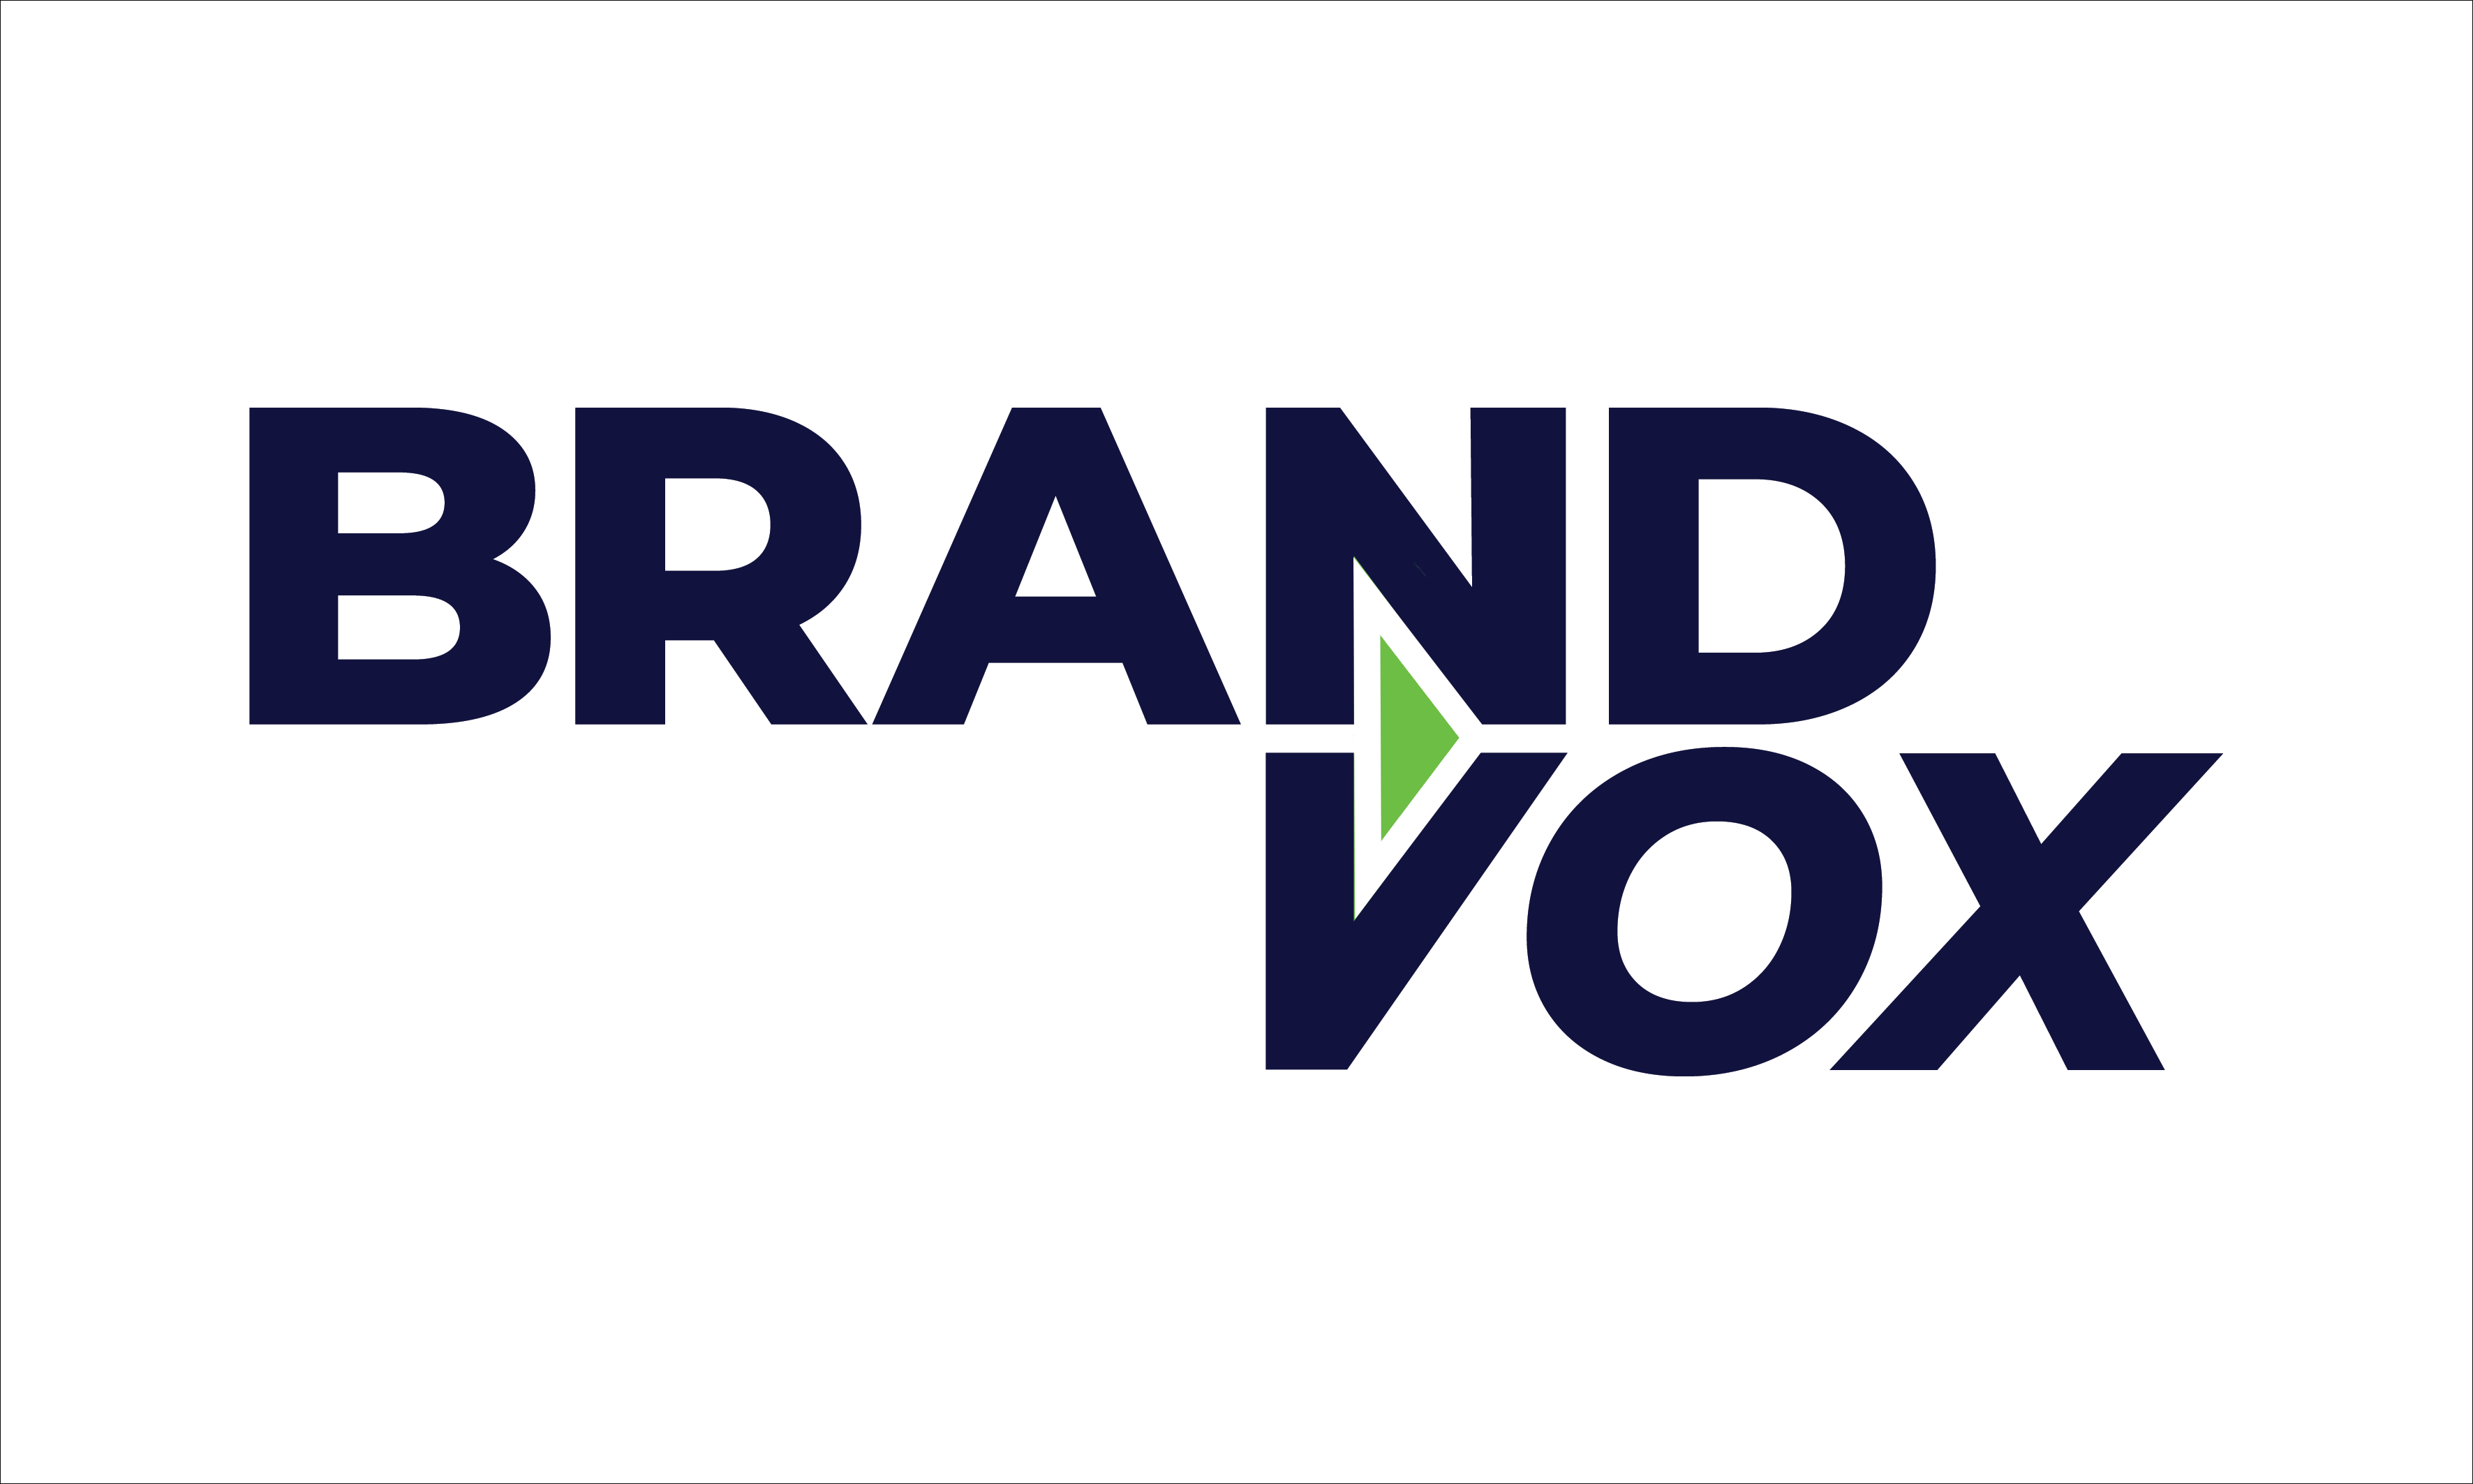 Brandvox